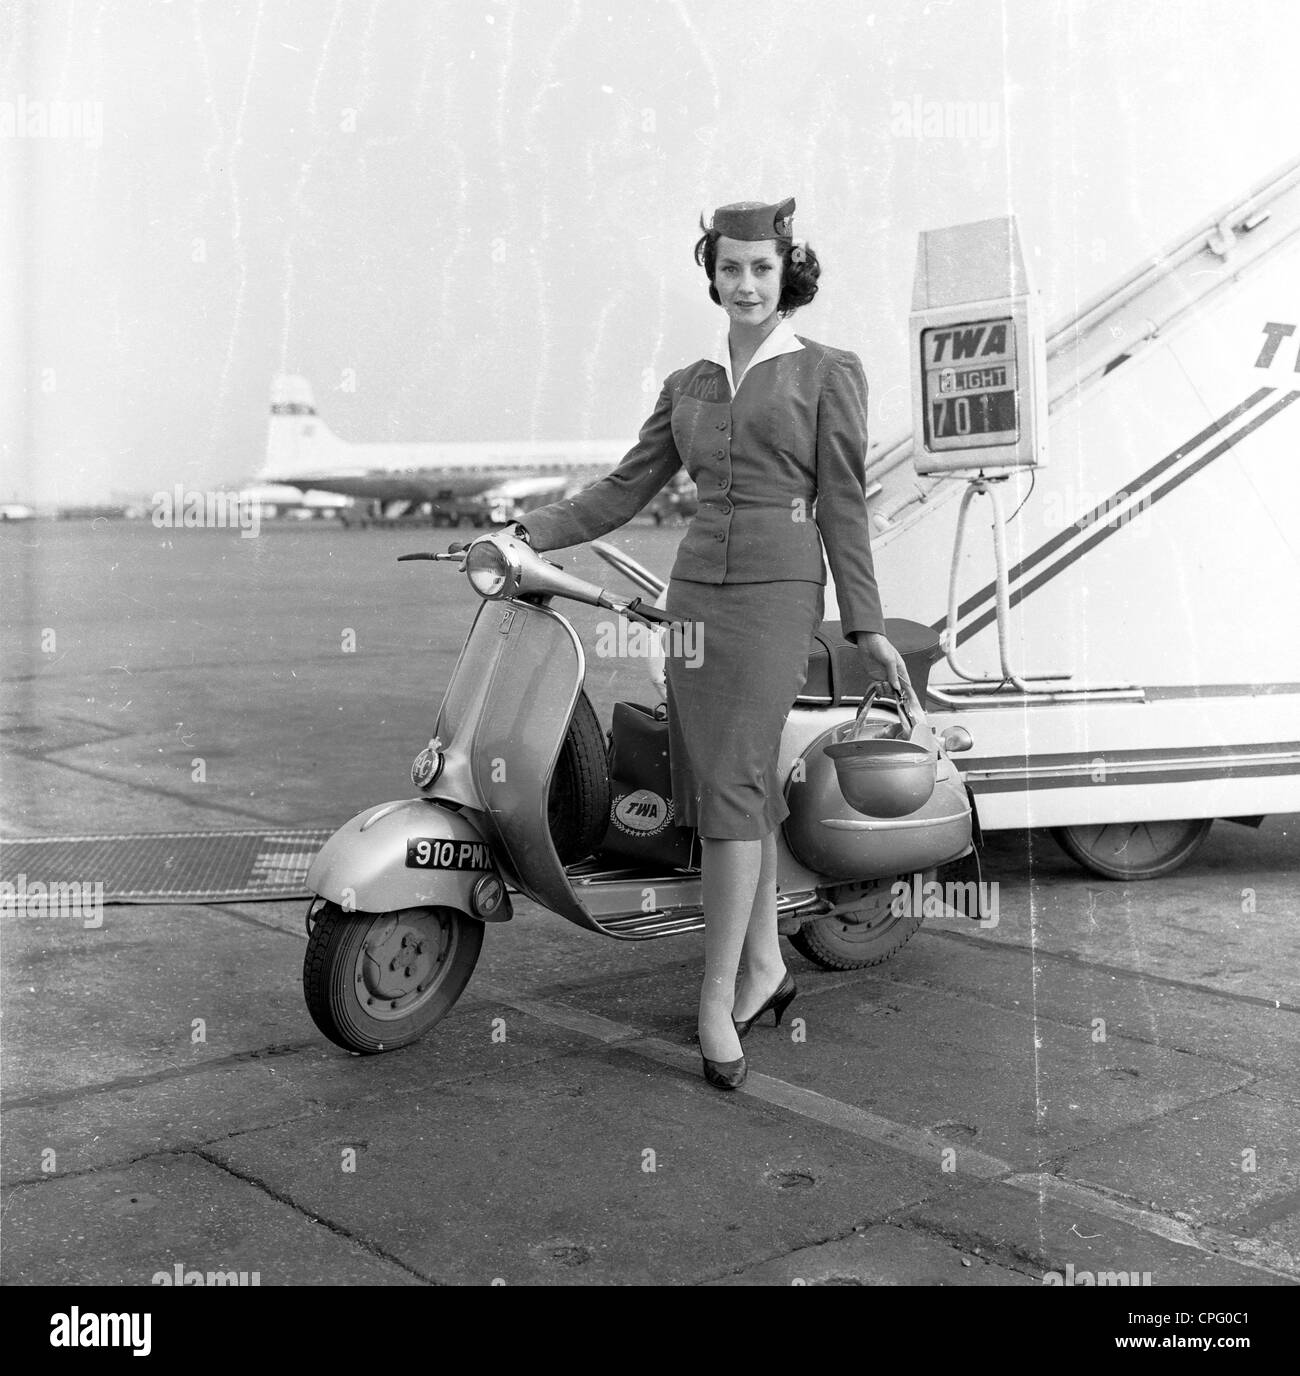 Scooter 1960s Banque d'images noir et blanc - Alamy